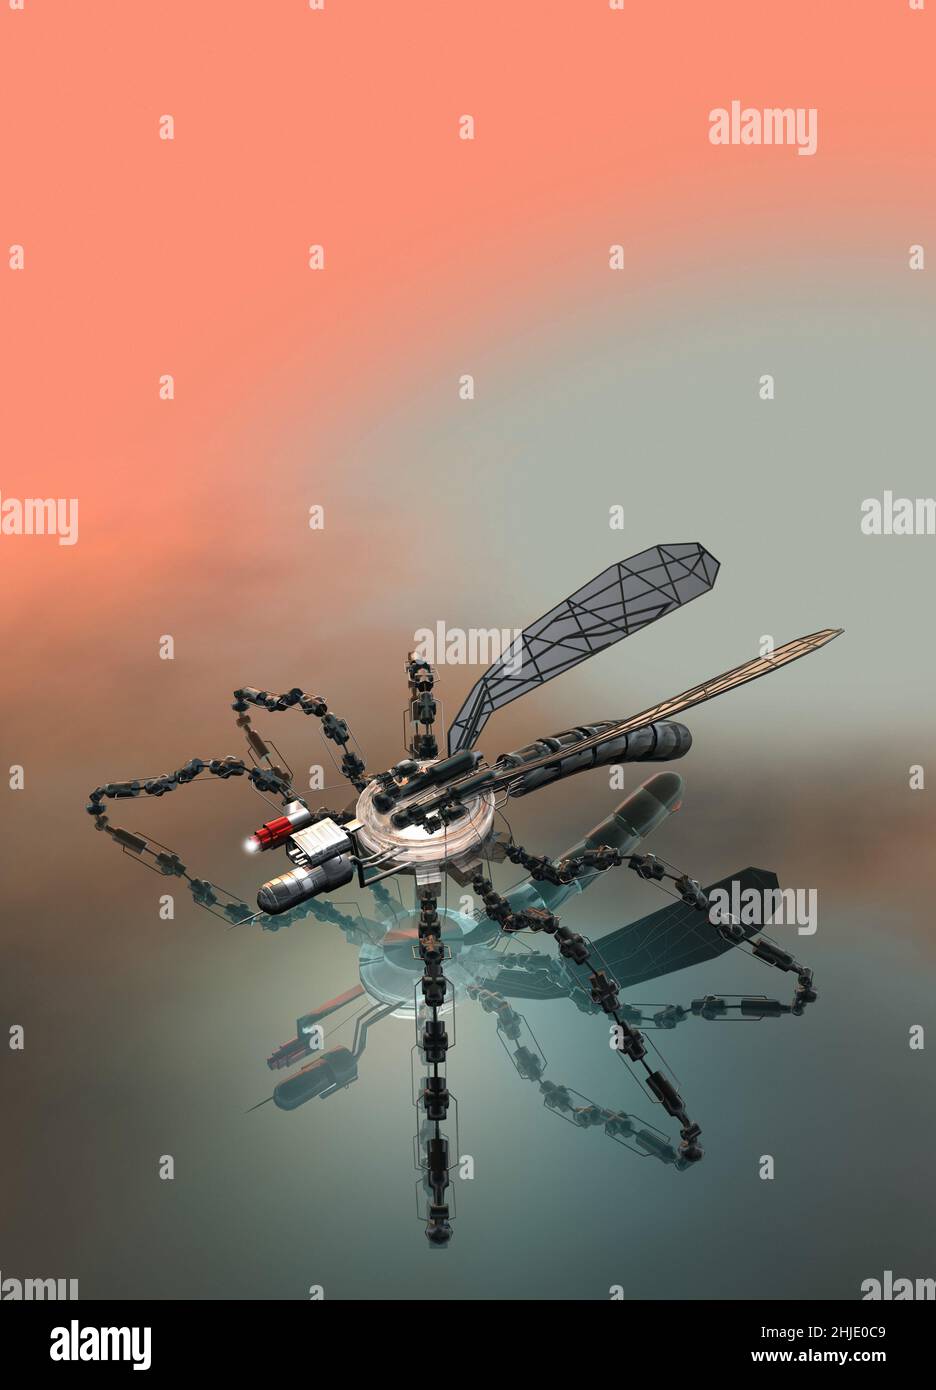 Insecto espía drone, ilustración conceptual Foto de stock